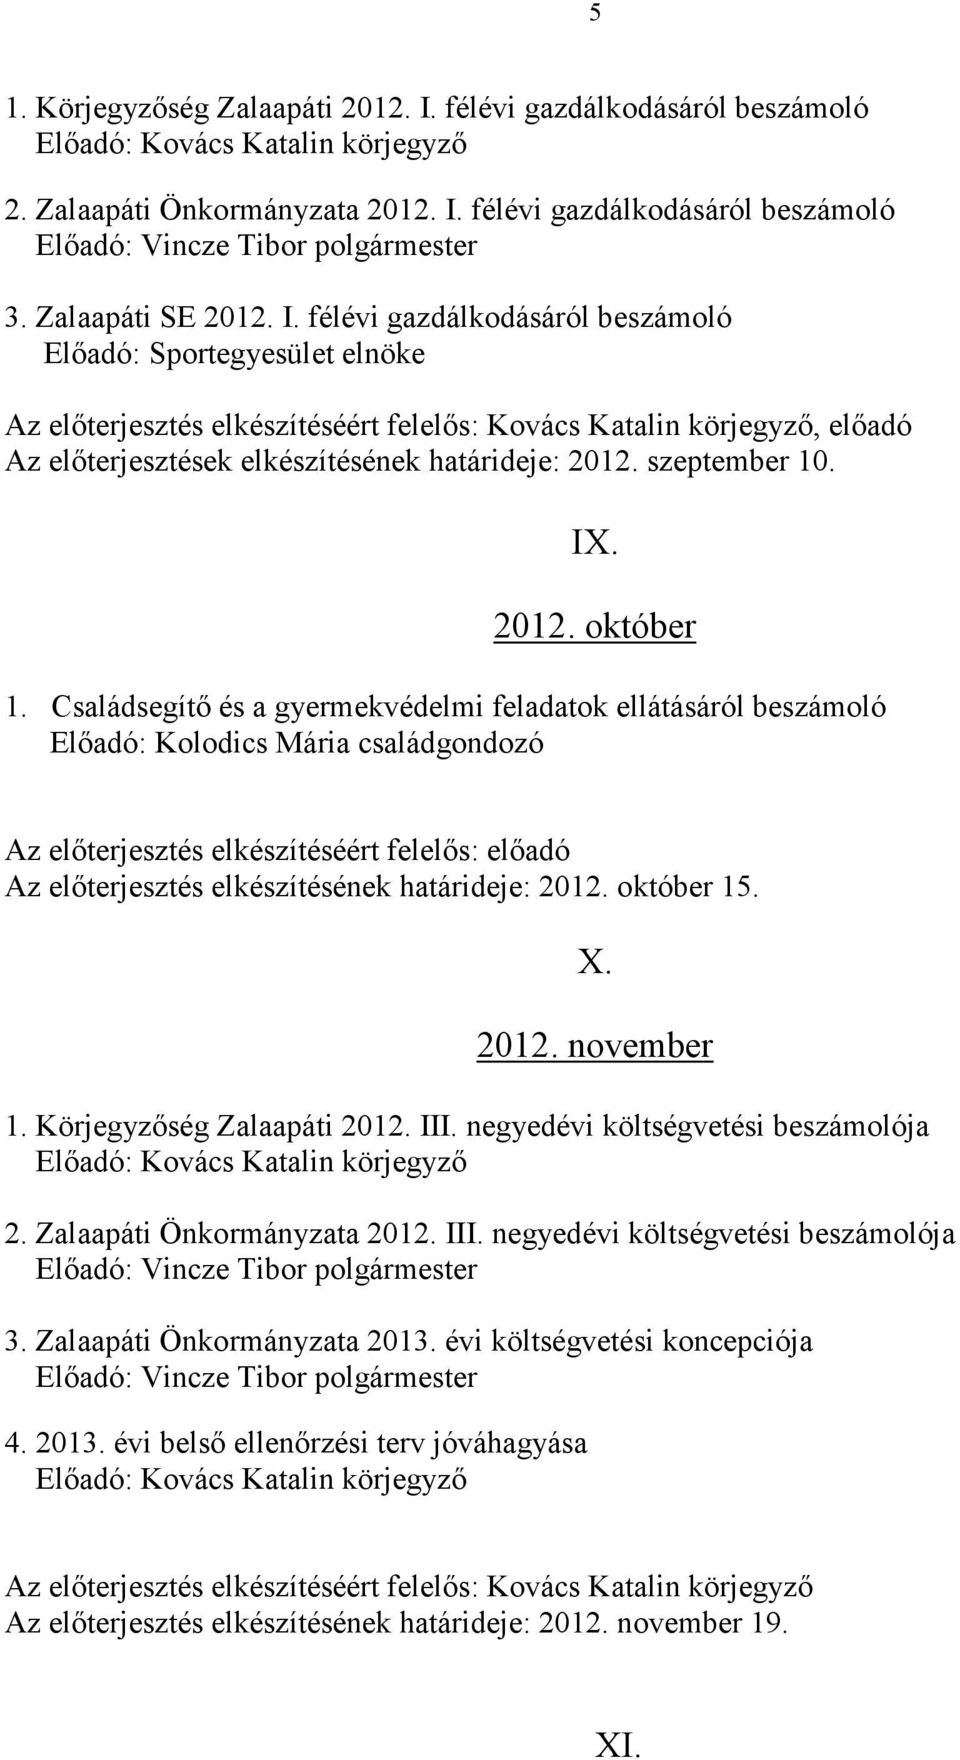 félévi gazdálkodásáról beszámoló 3. Zalaapáti SE 2012. I.